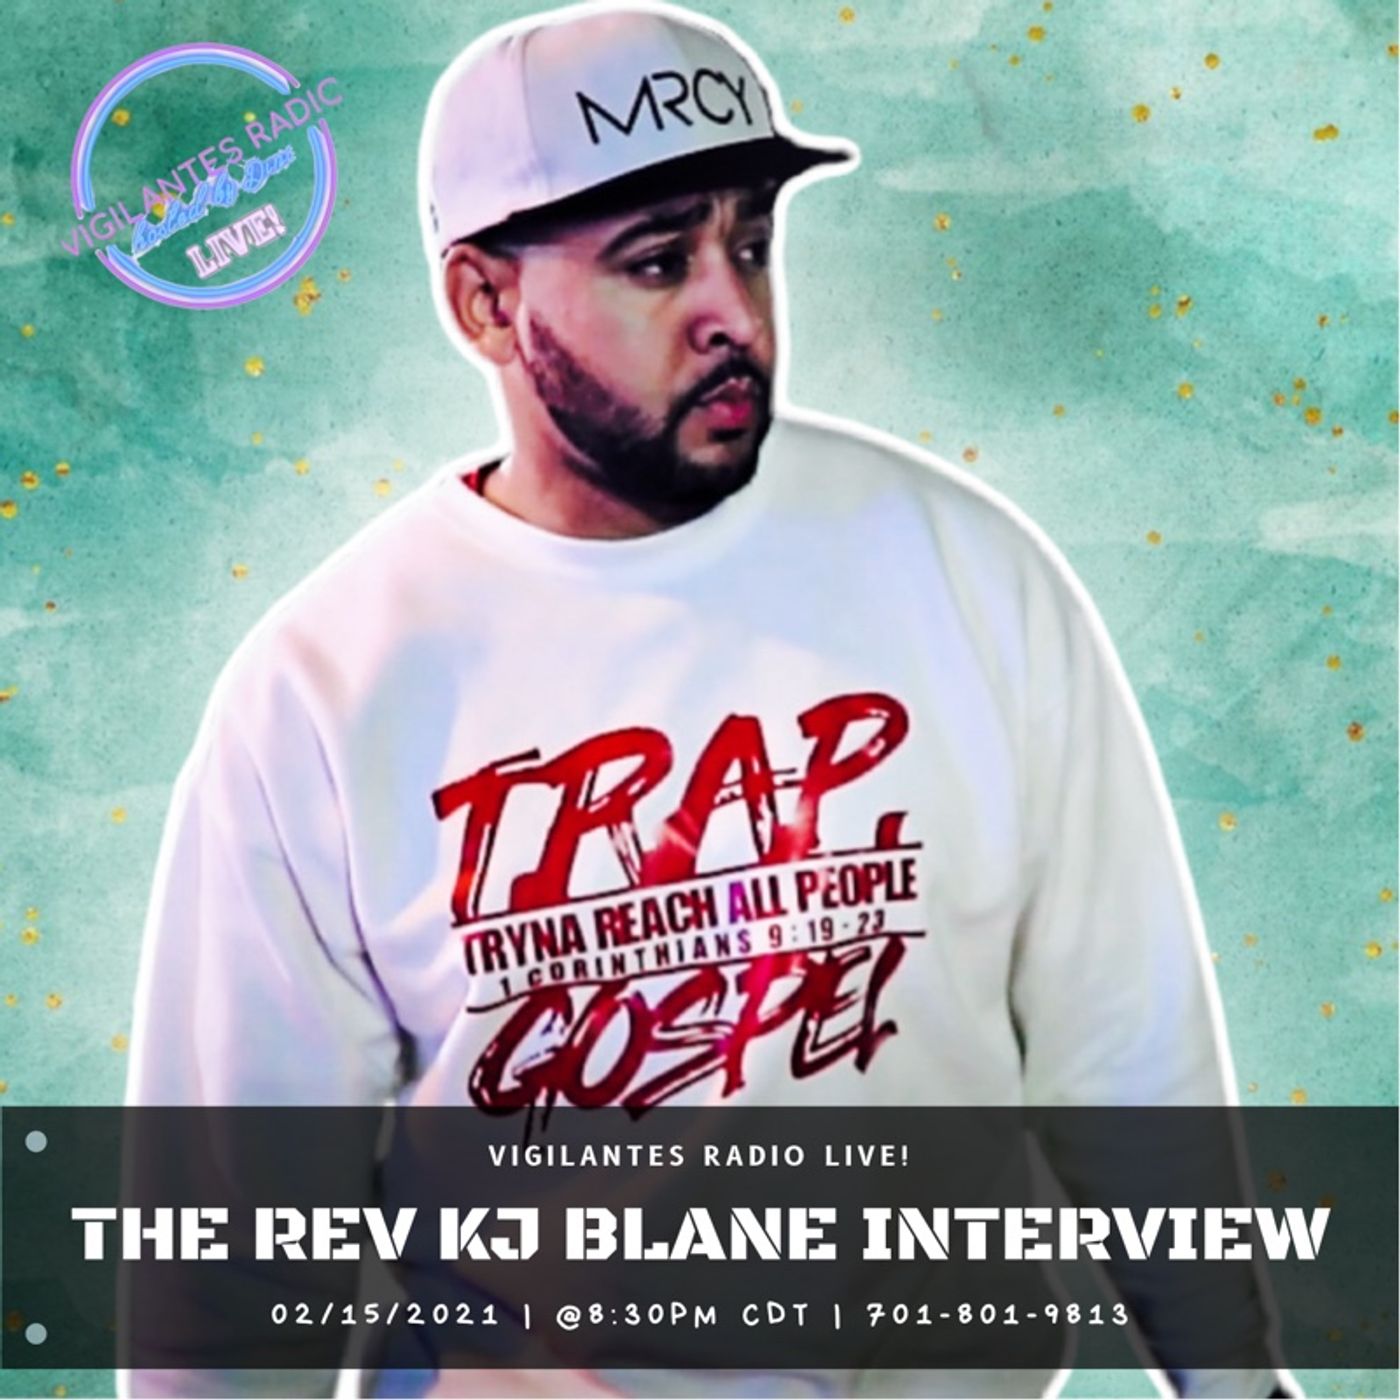 The REV KJ Blane Interview. Image